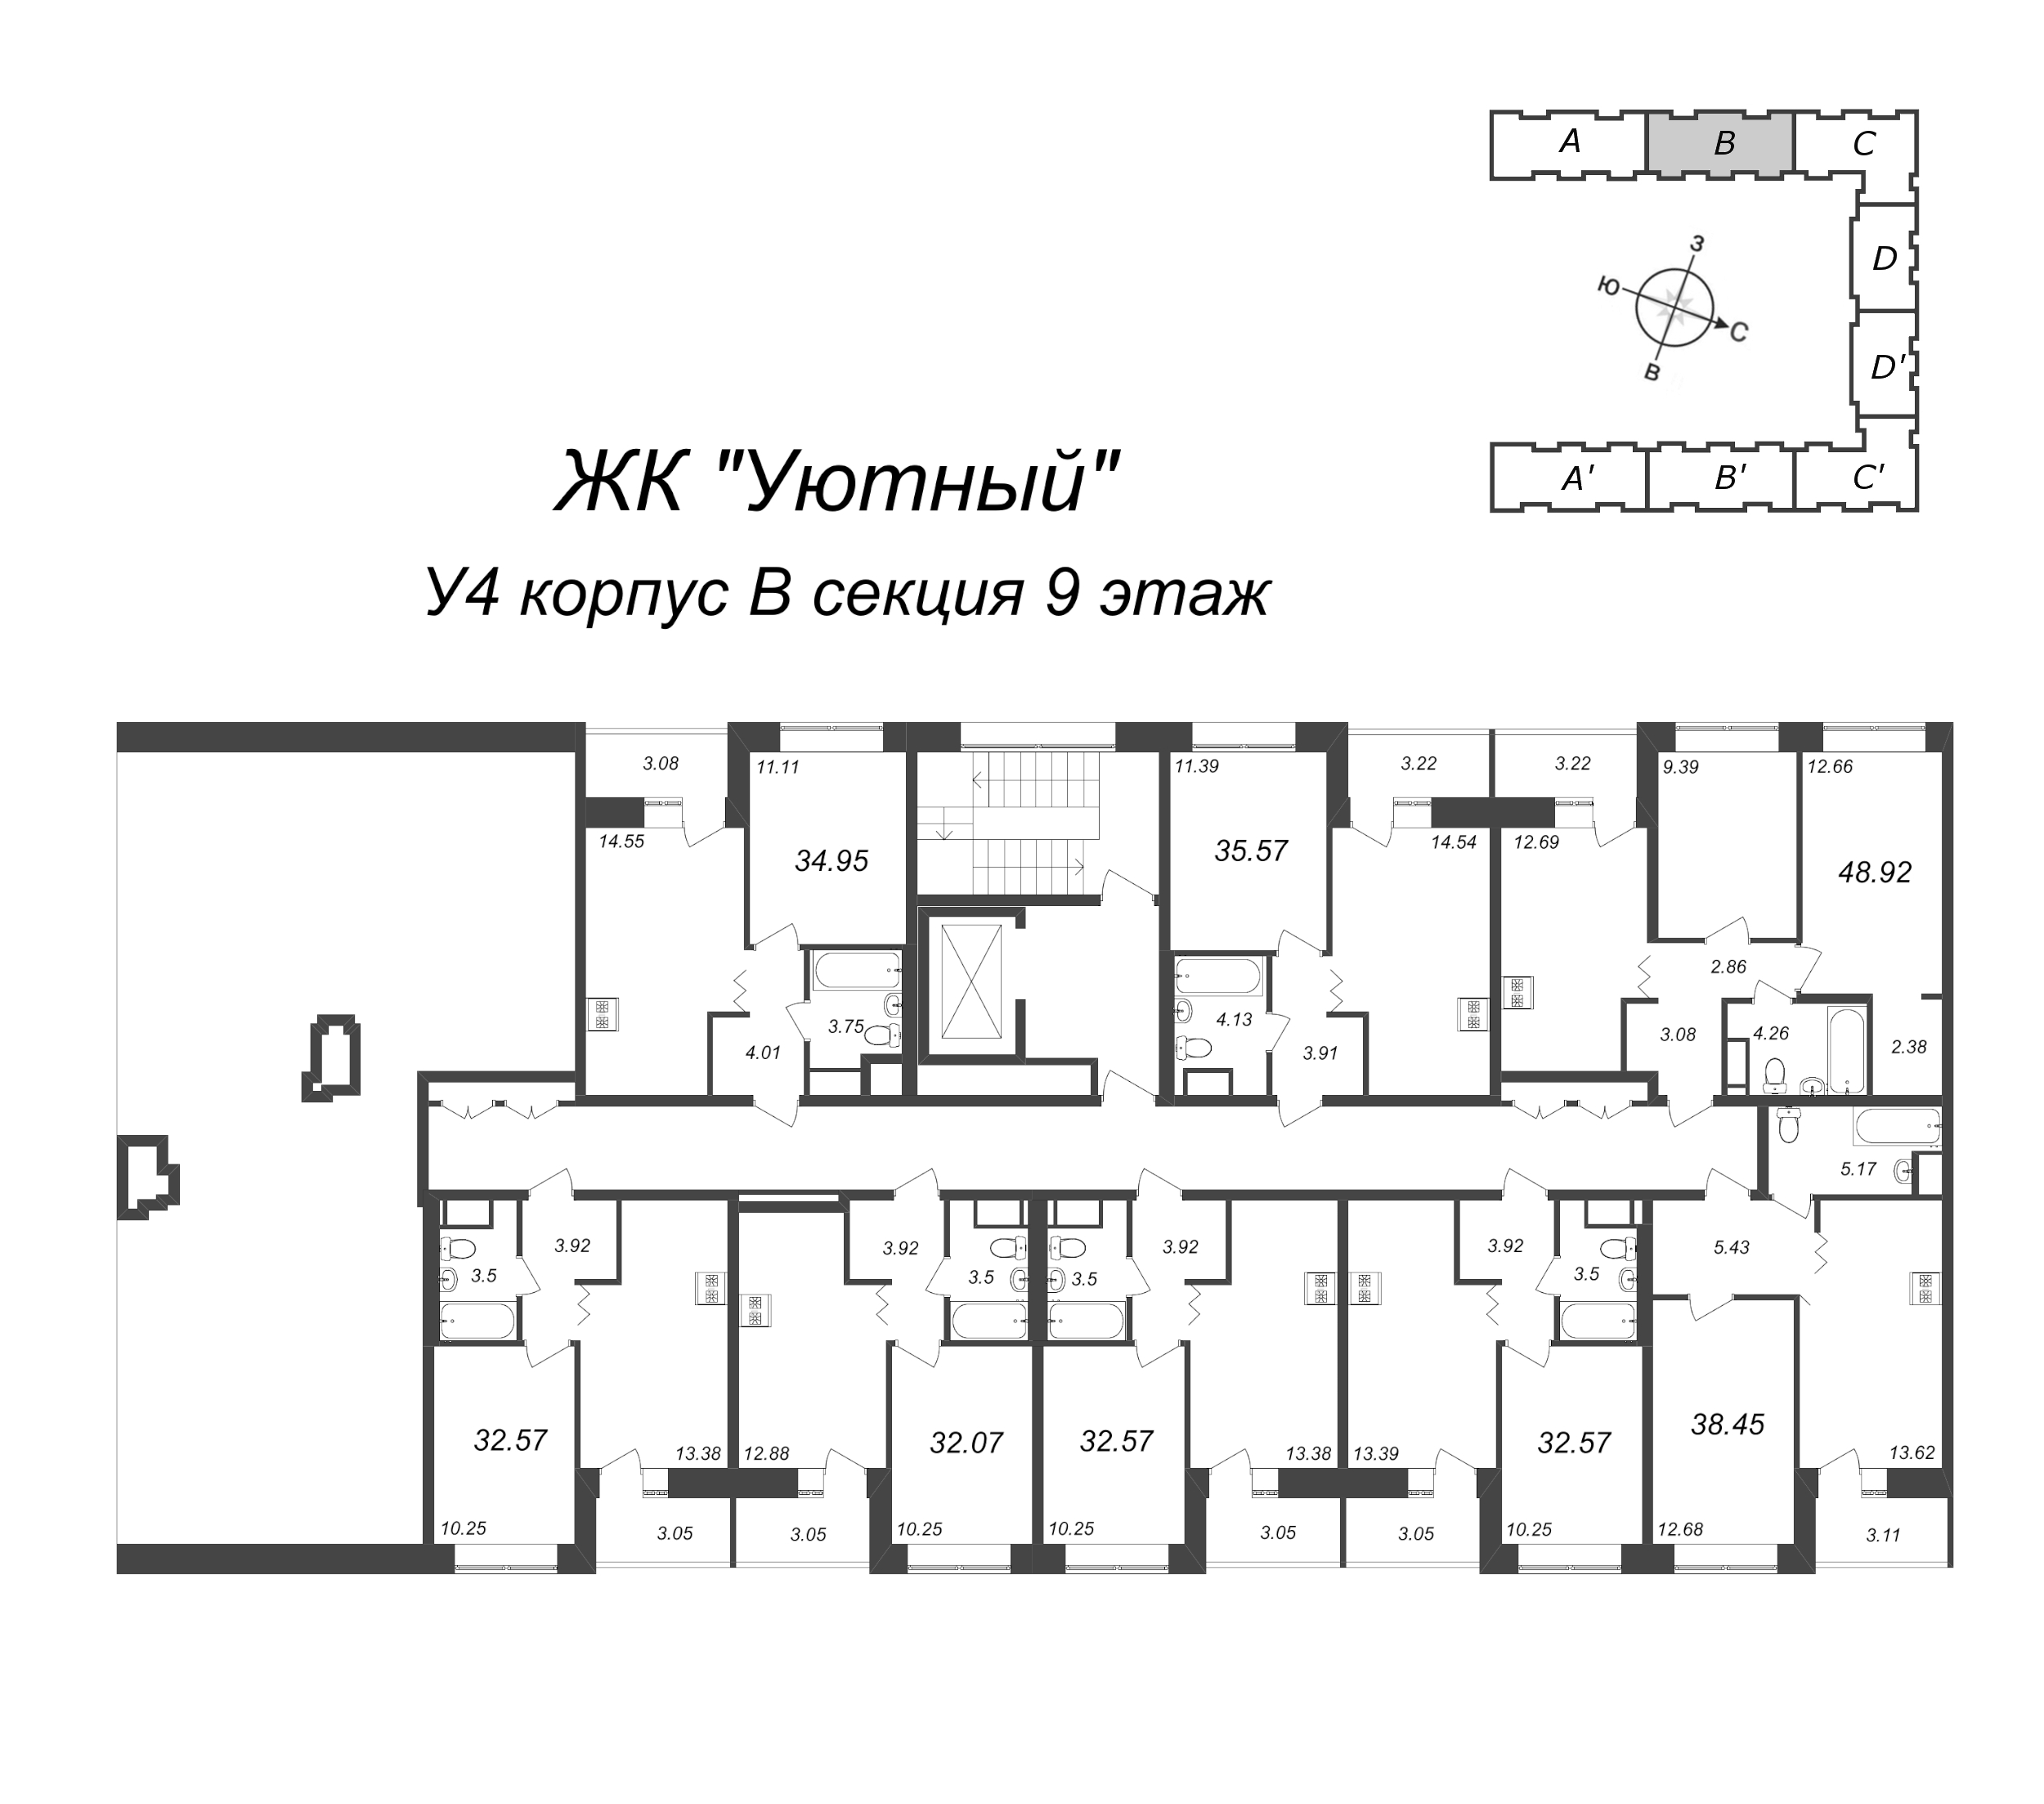 1-комнатная квартира, 32.07 м² в ЖК "Уютный" - планировка этажа